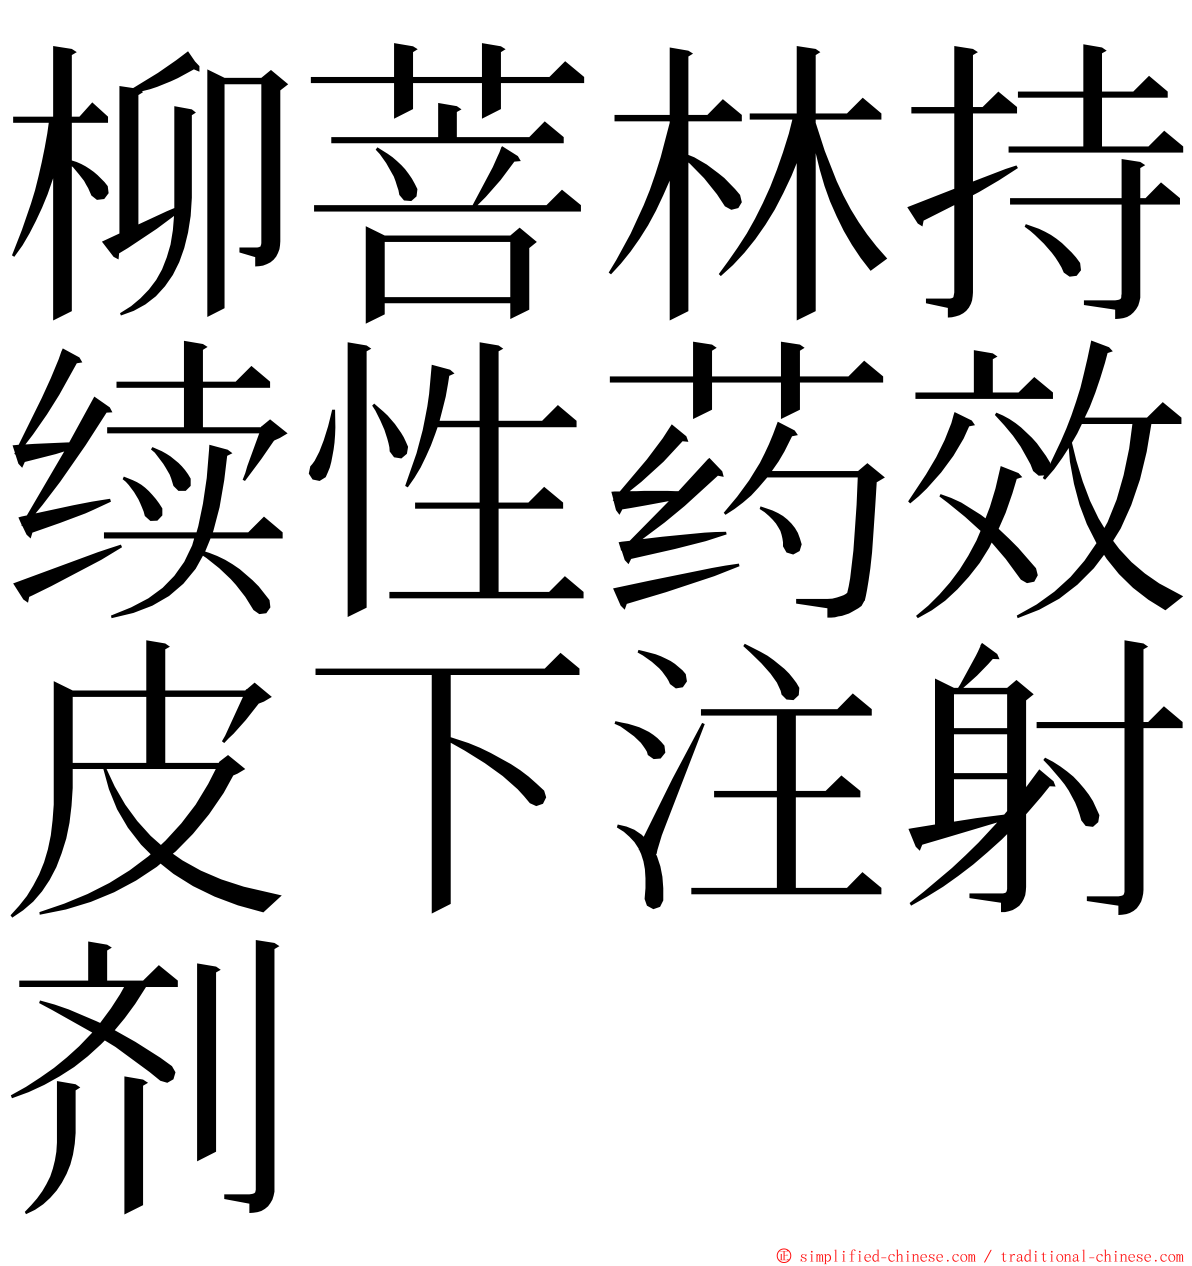 柳菩林持续性药效皮下注射剂 ming font